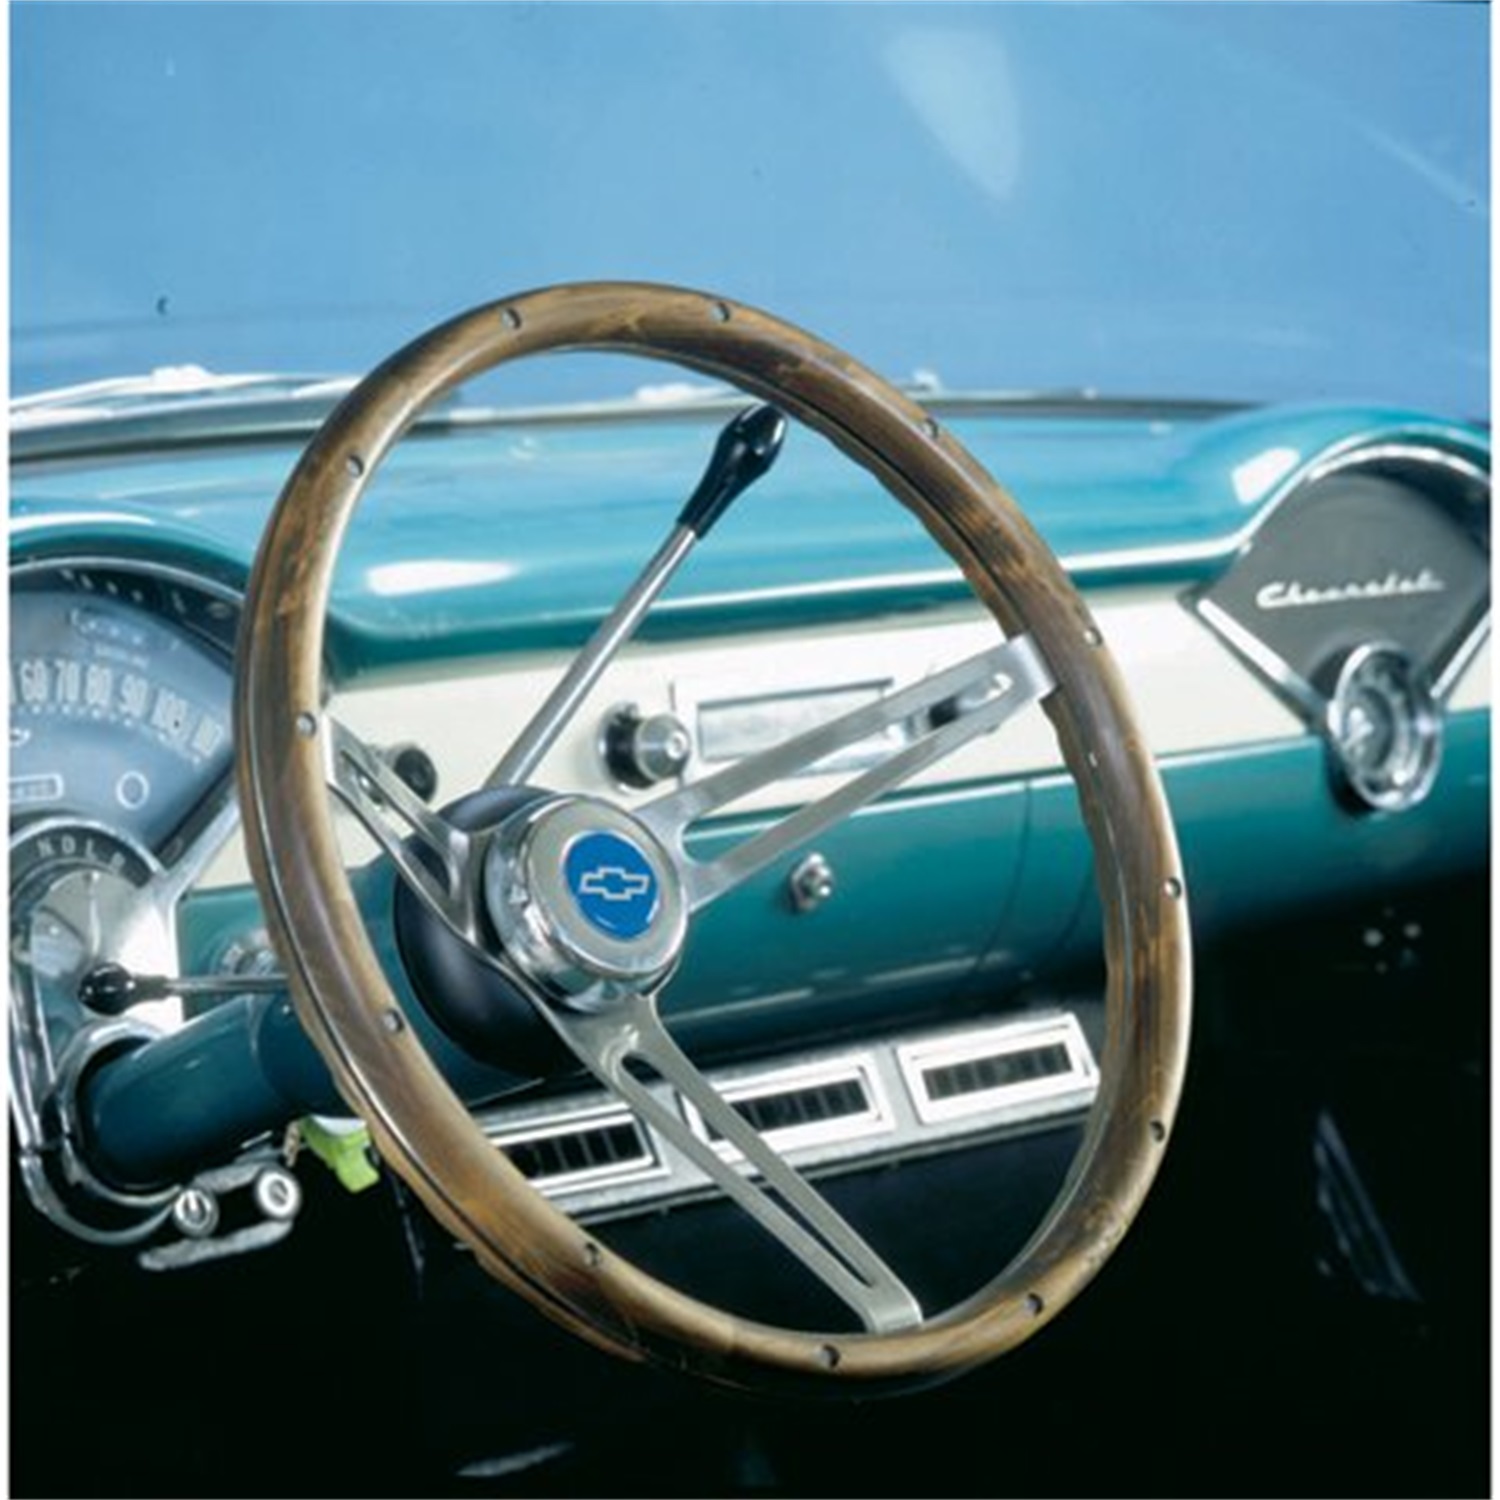 1969-1974 Nova steering wheel SS Grant 15" MUSCLE CAR STAINLESS steering wheel